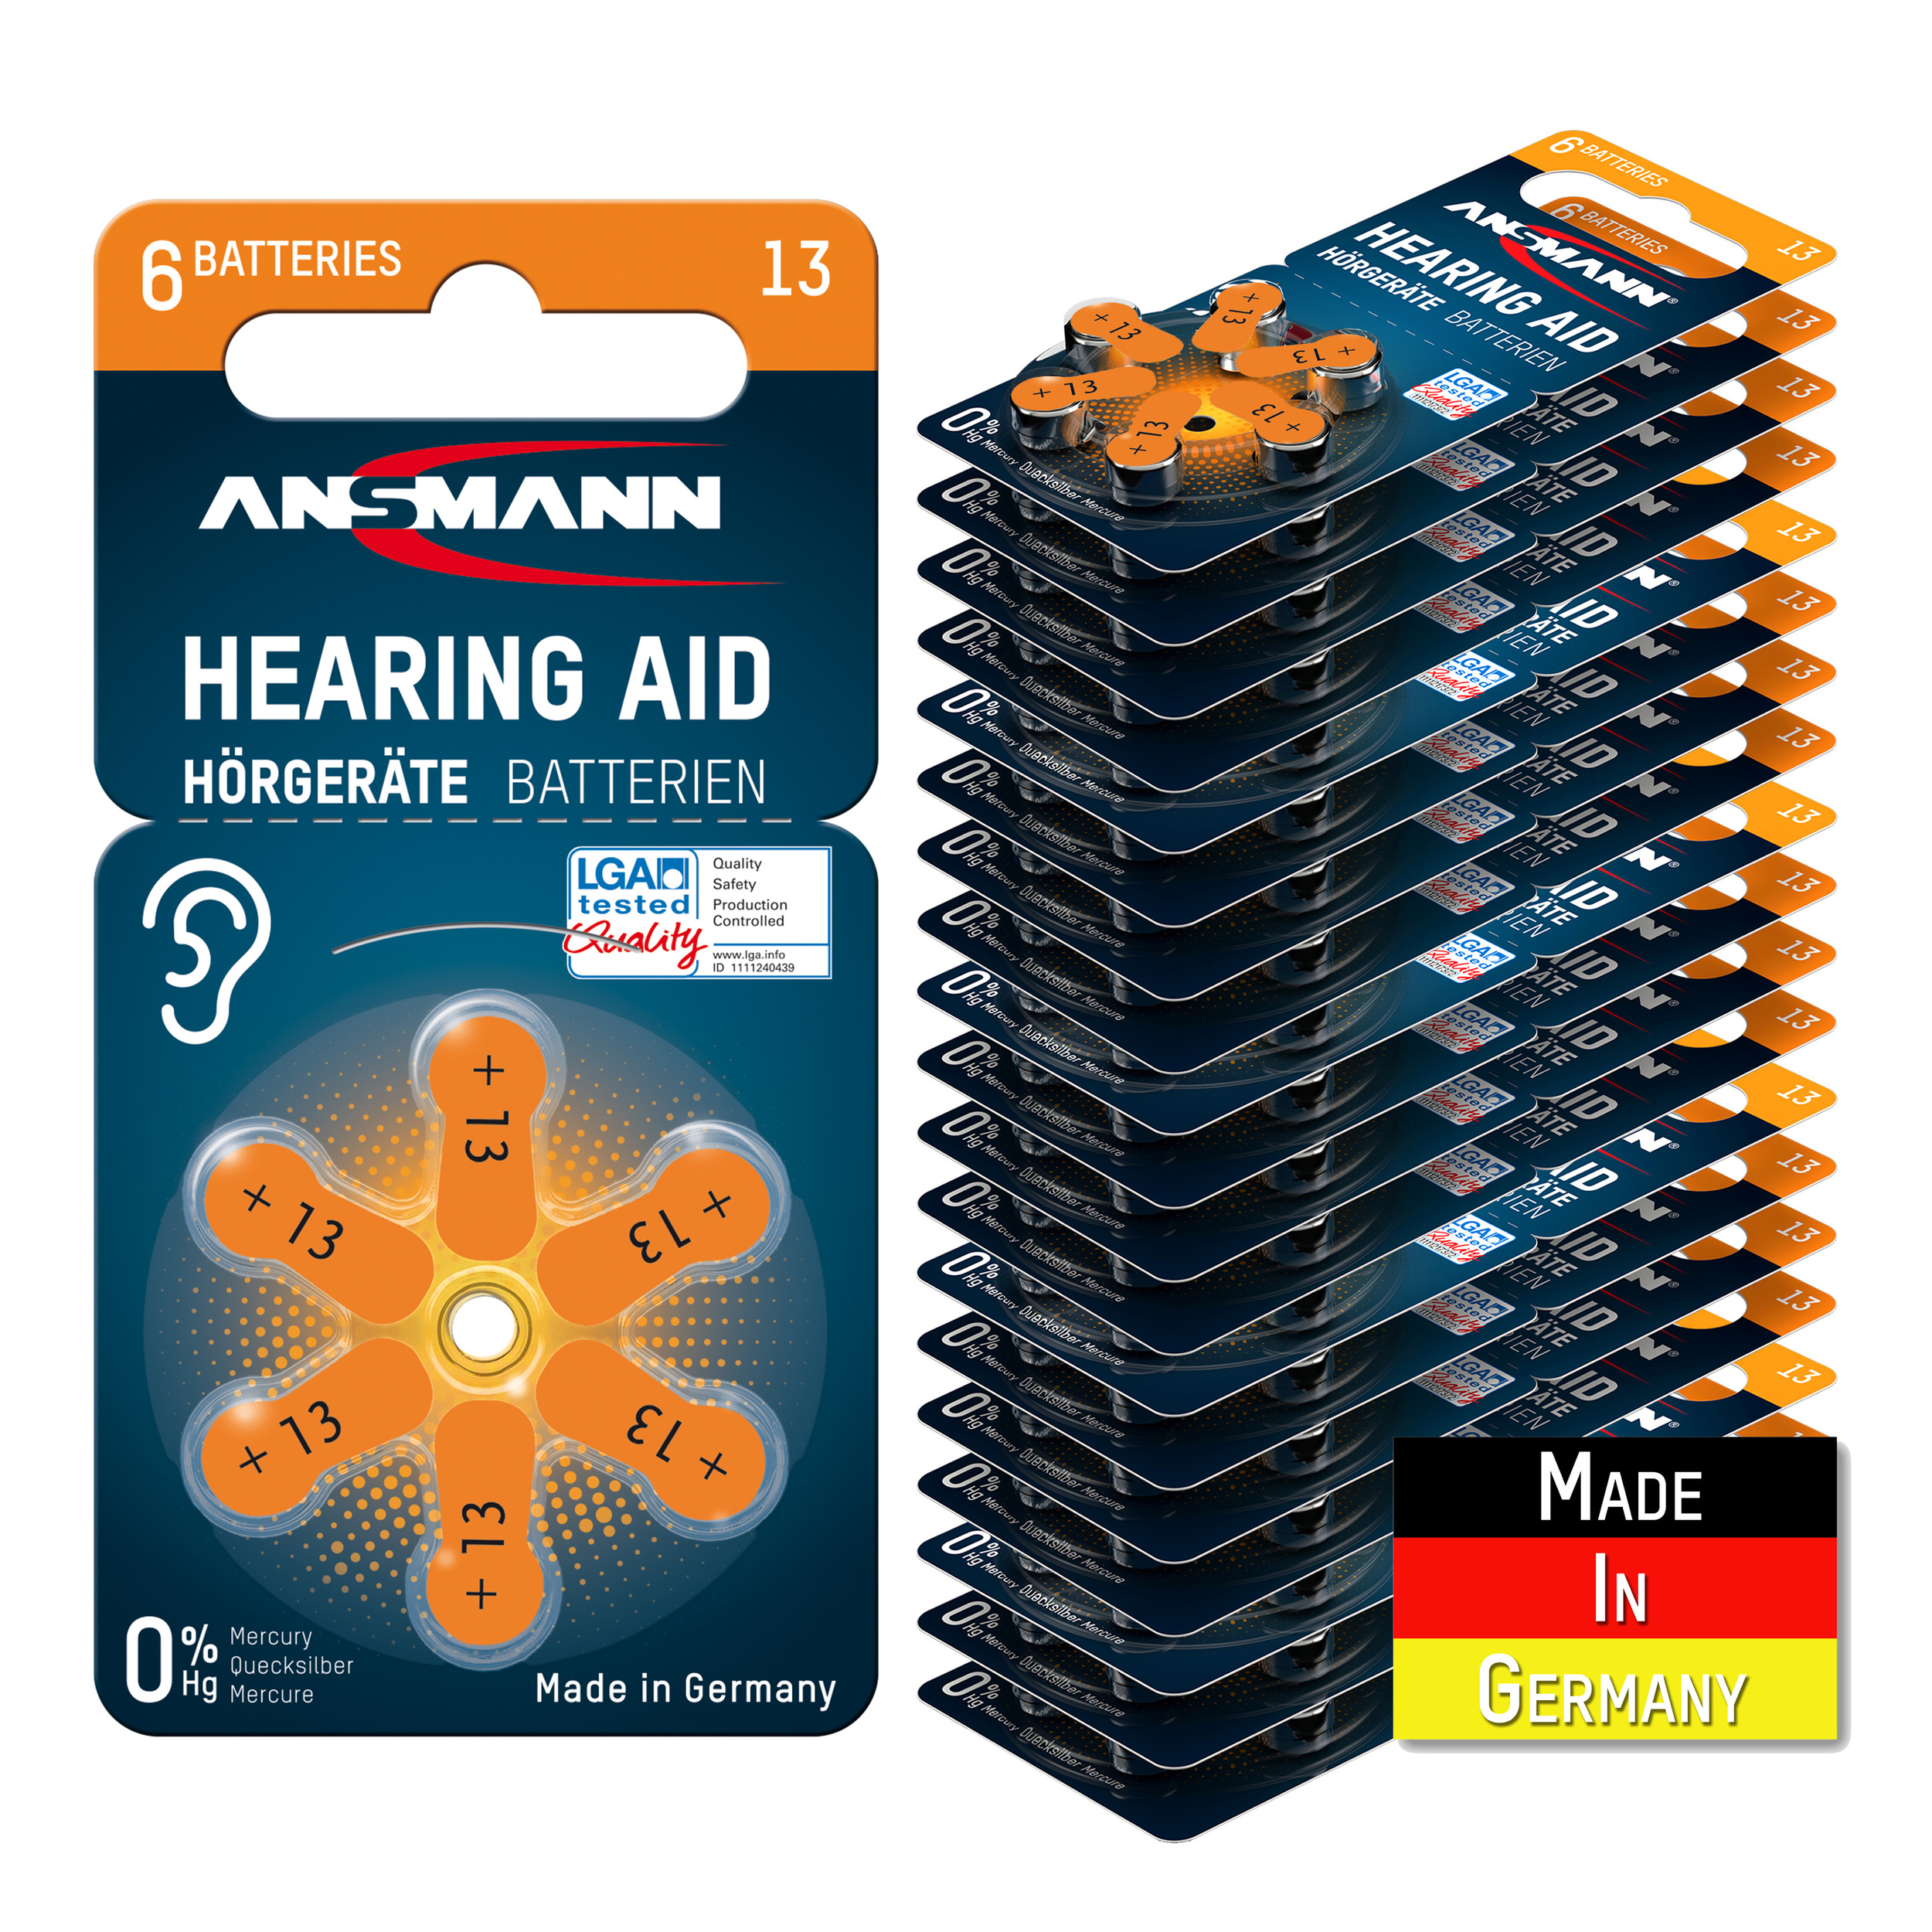 ANSMANN Typ 13 Hörgerätebatterien Hörgerätebatterien Luft Zink-Luft, mAh Stück P13 1.4 Zink 120 ZL2 Orange 310 Batterie, - Volt, PR48